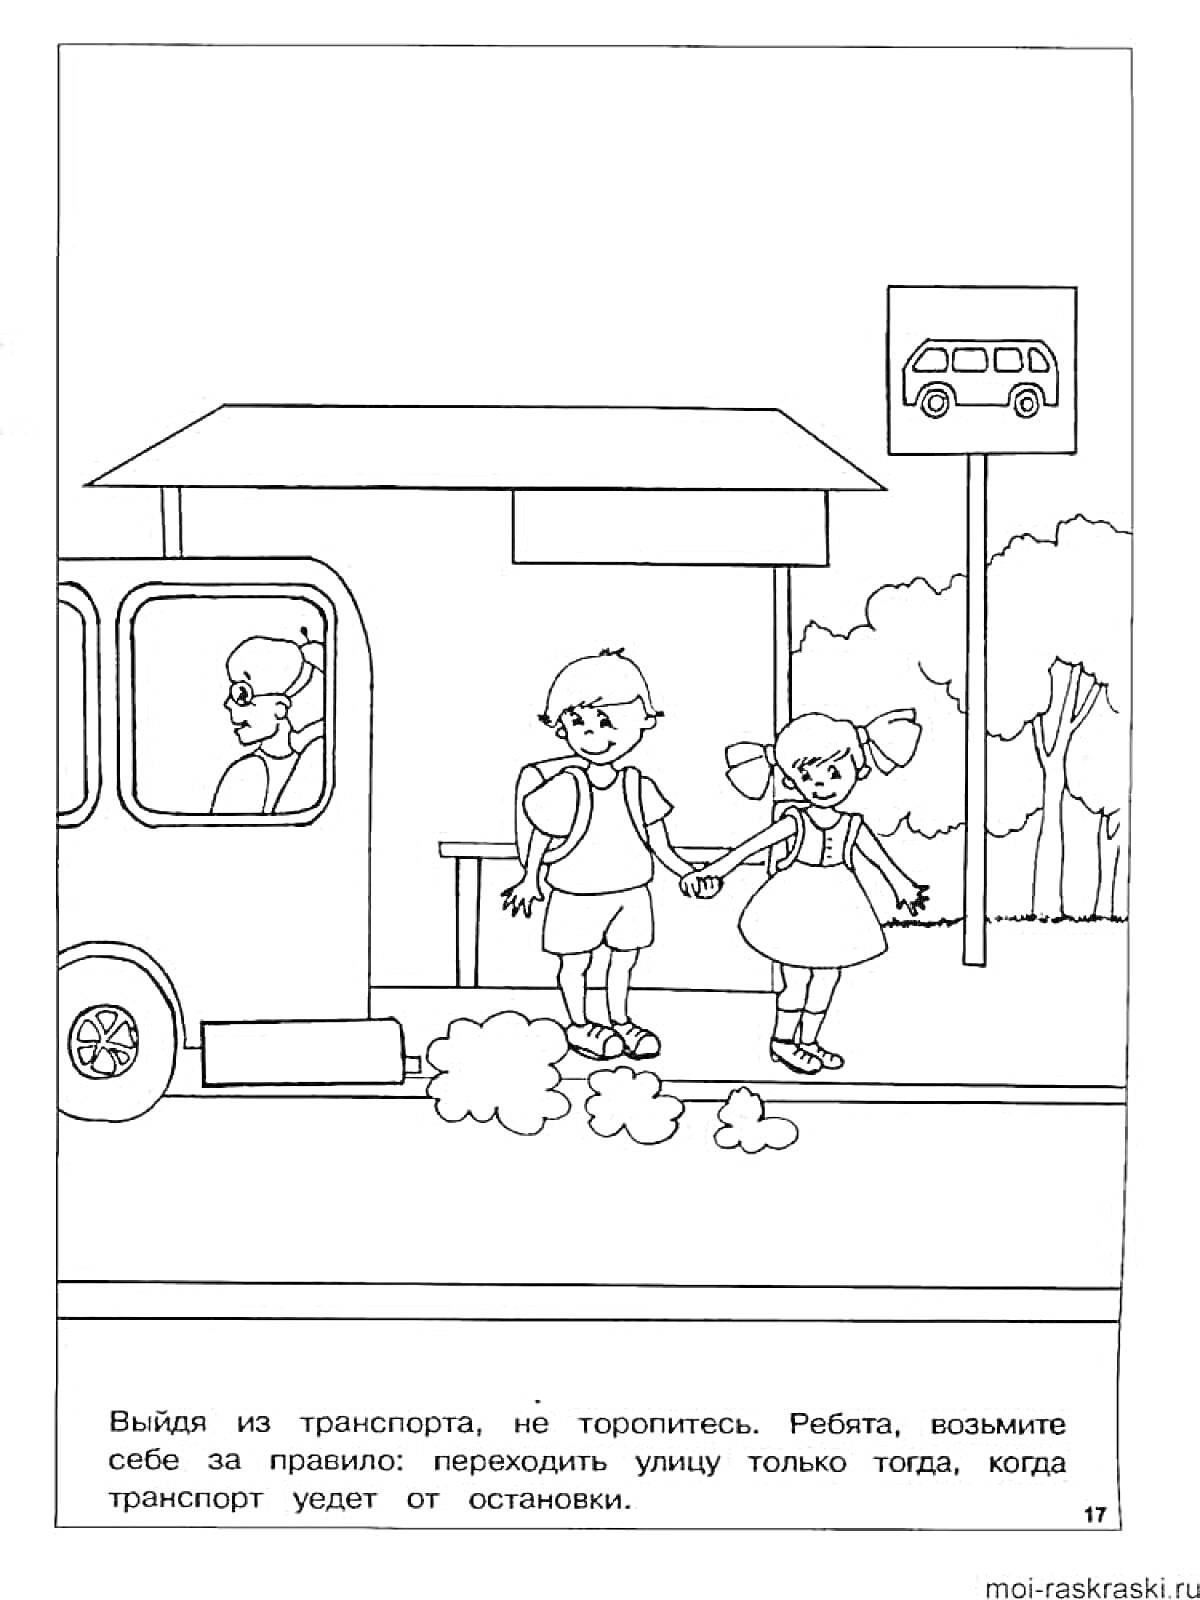 Остановка общественного транспорта - дети переходят дорогу